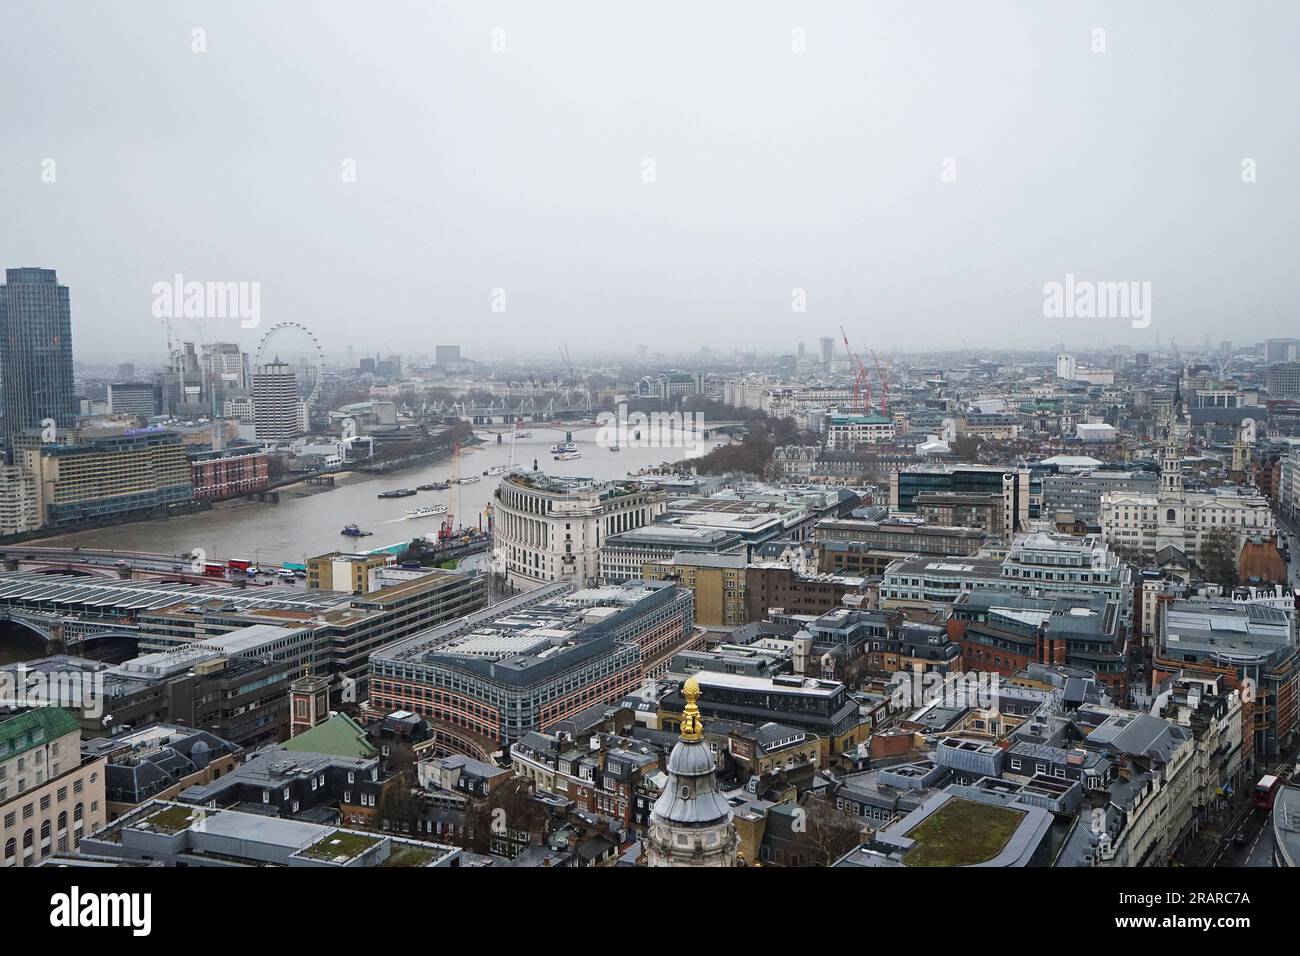 Architecture extérieure et design de vue aérienne de dessus du paysage urbain et de l'horizon de Londres depuis la terrasse sur le toit de la cathédrale St Paul - Angleterre, Royaume-Uni Banque D'Images